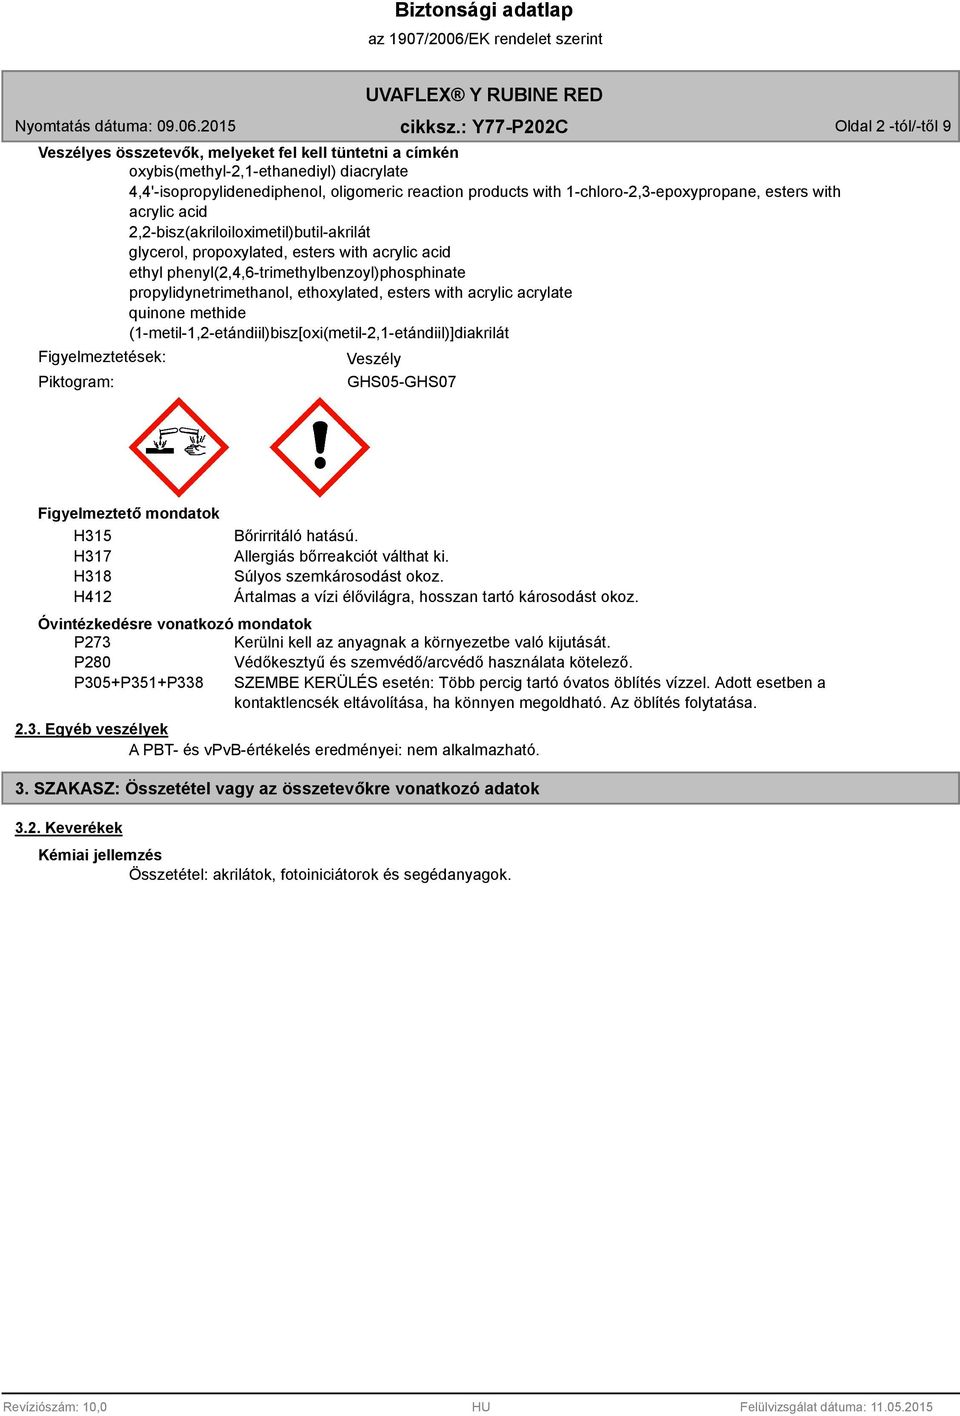 propylidynetrimethanol, ethoxylated, esters with acrylic acrylate quinone methide (1-metil-1,2-etándiil)bisz[oxi(metil-2,1-etándiil)]diakrilát Figyelmeztetések: Piktogram: Veszély GHS05-GHS07